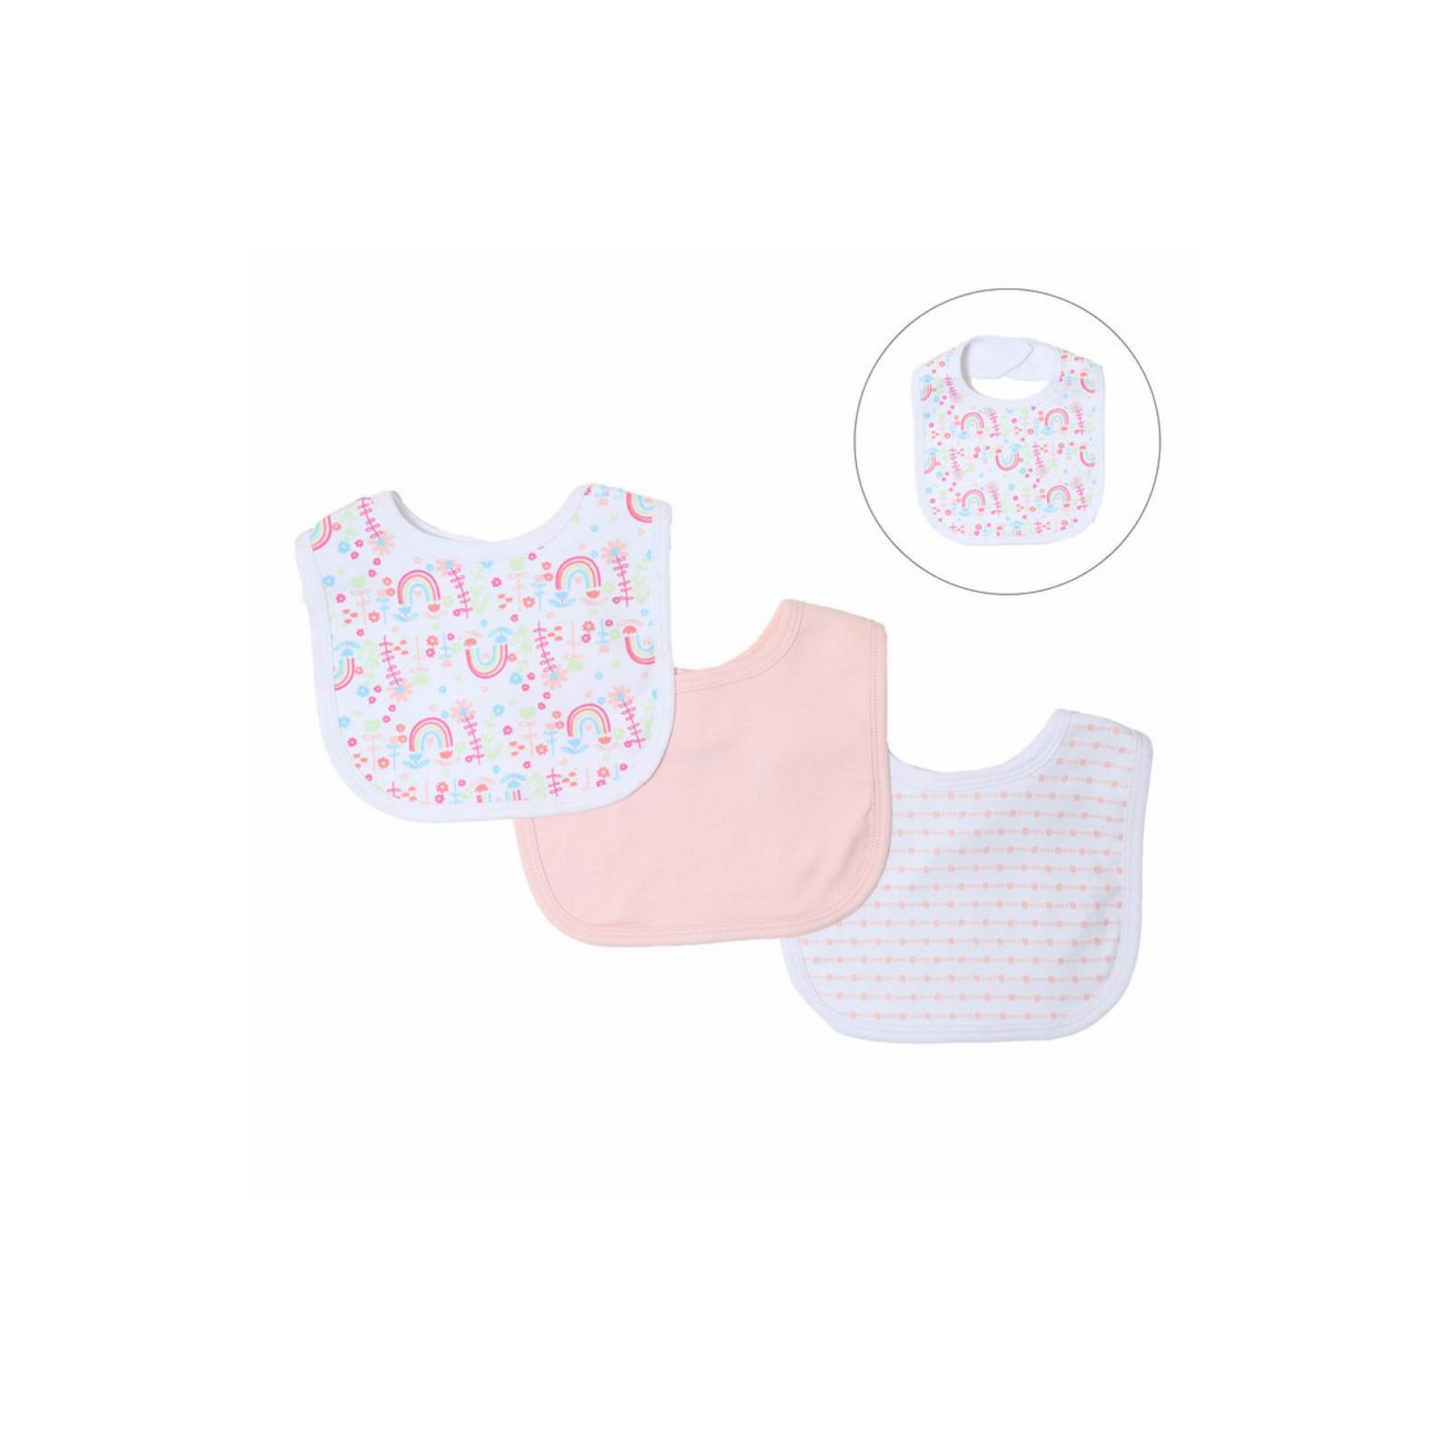 Personalised Baby Keepsake Box Gift Hamper - My Friend & Me – Pink